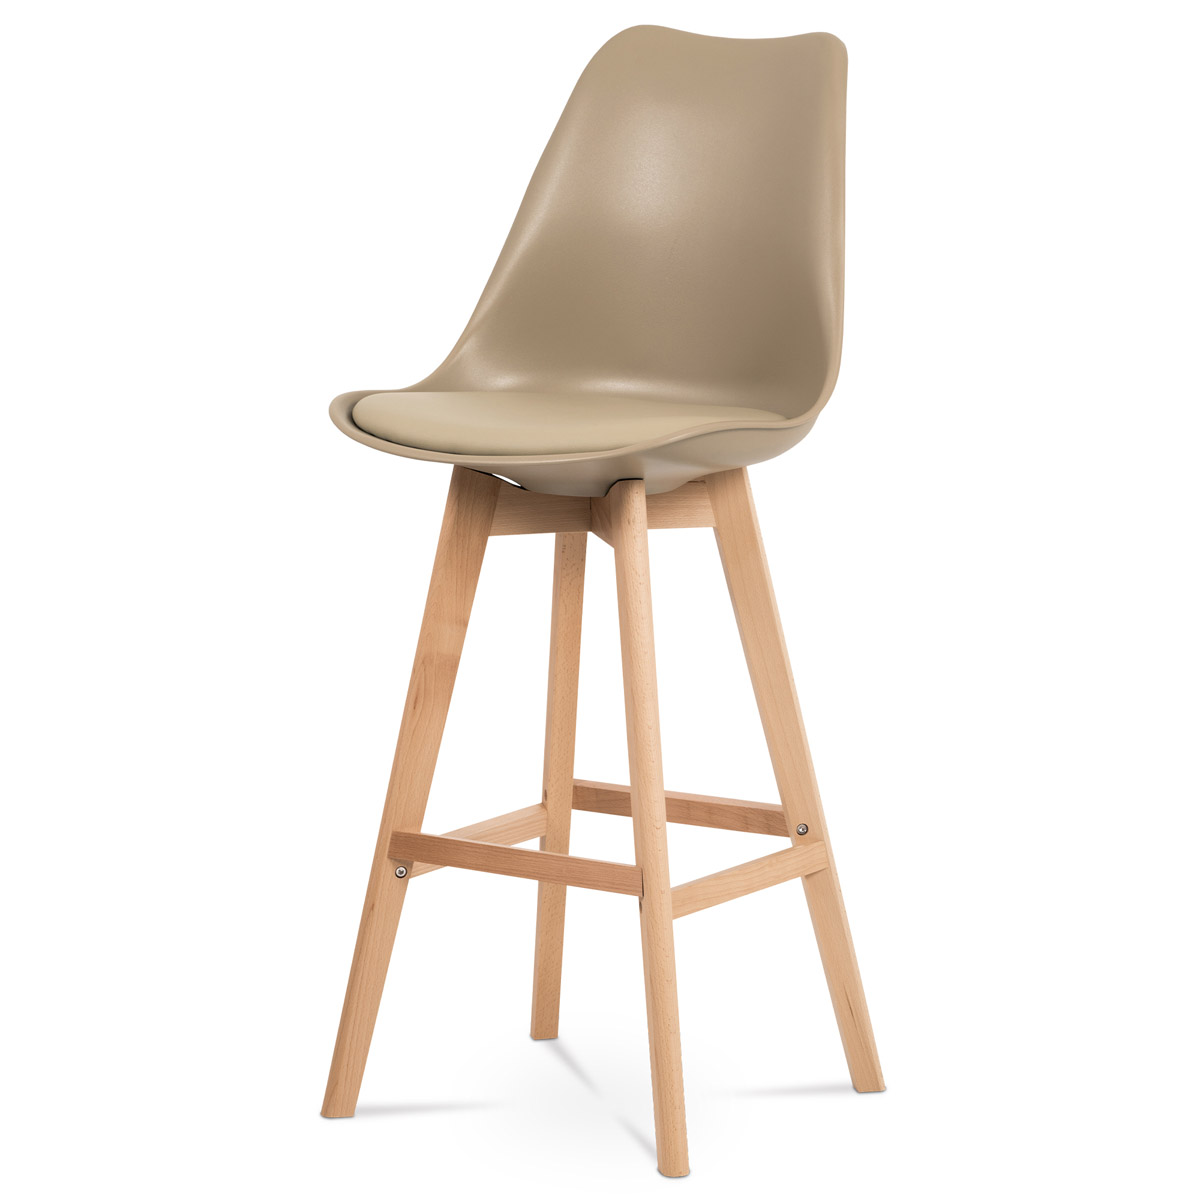 Barová židle, cappuccino plast+ekokůže, nohy masiv buk